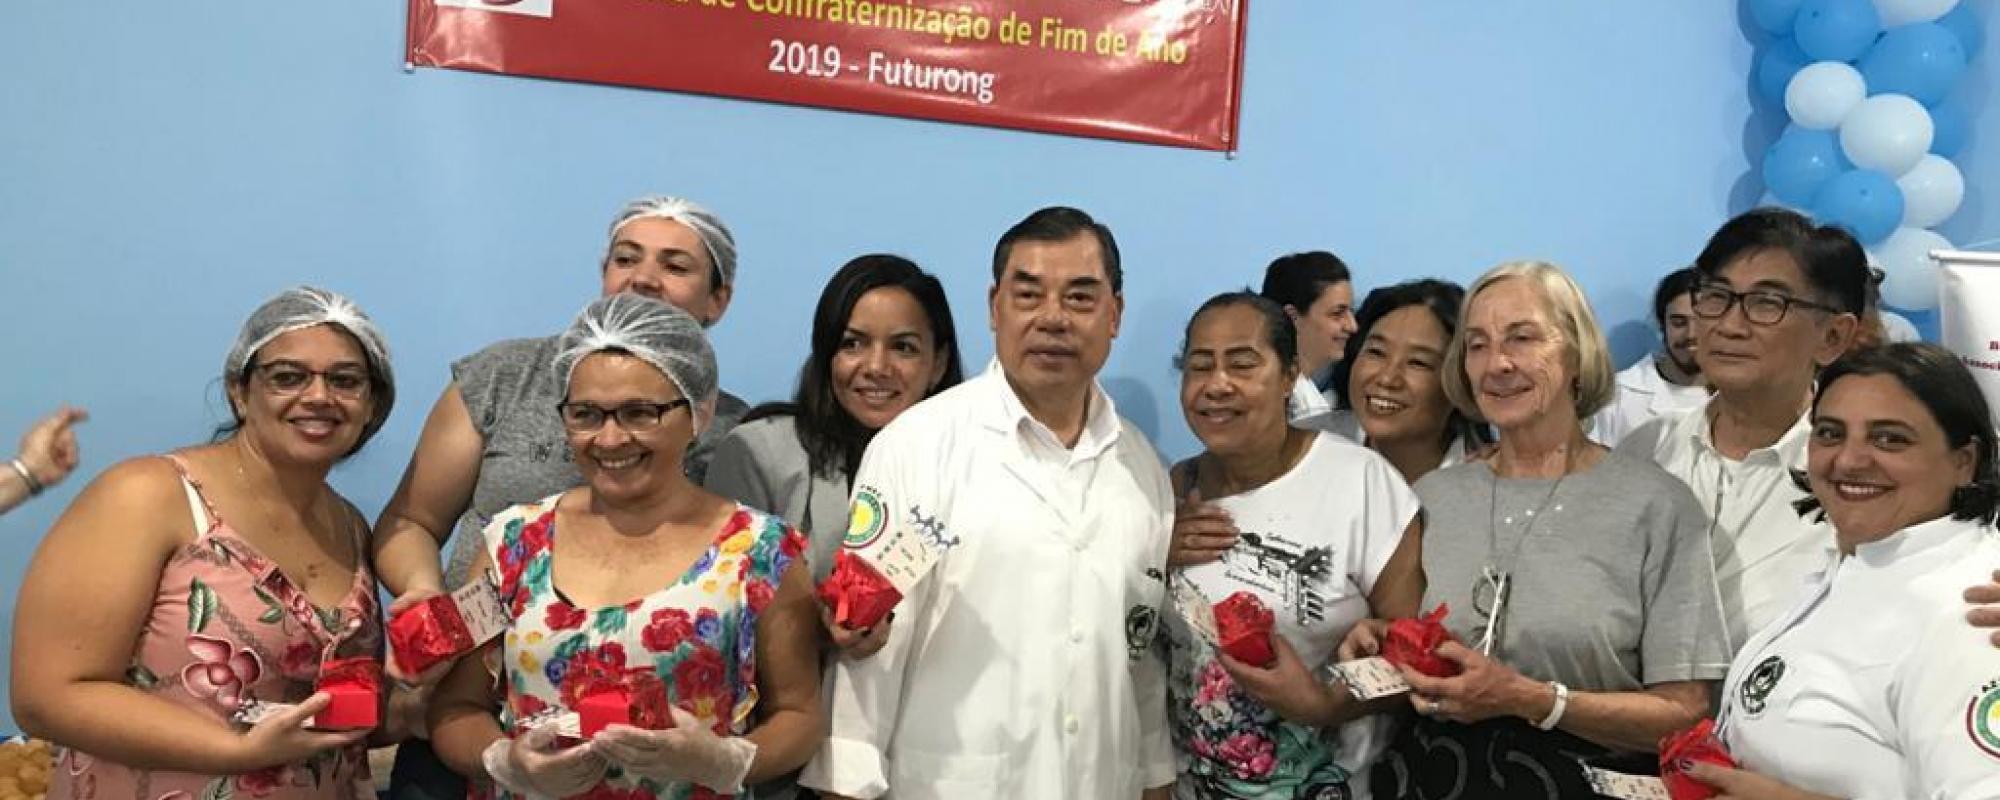 Read more about the article 01/12/2019 – Confraternização de Fim de Ano em Futurong, Parelheiros – 2019